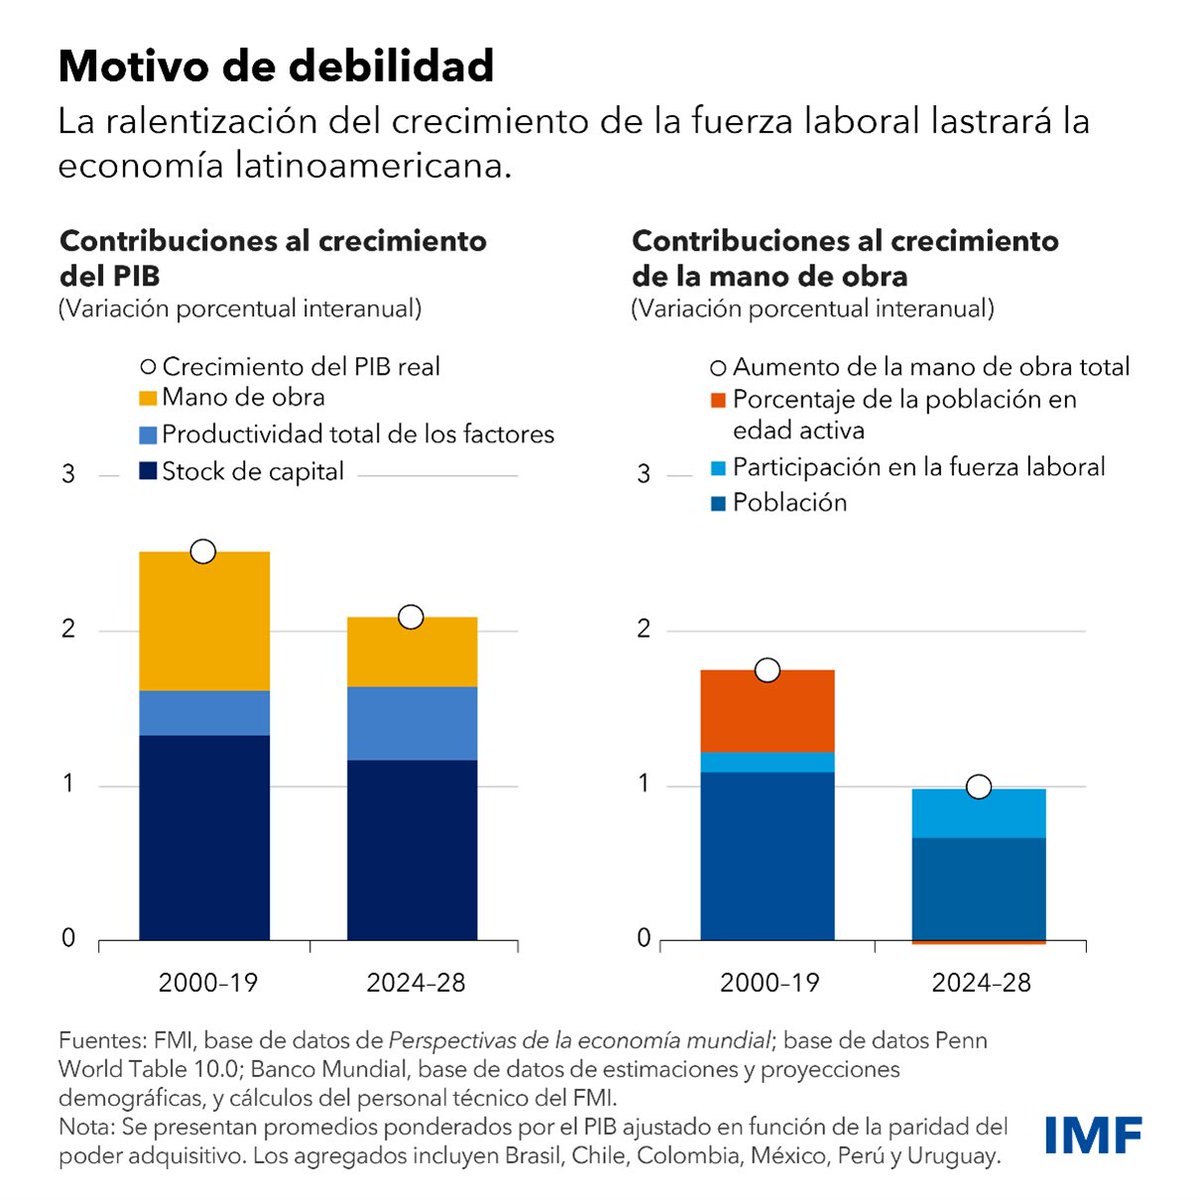 El crecimiento de América Latina registrará un promedio anual en torno a 2% en los próximos cinco años, inferior a un promedio histórico de por sí bajo, según las últimas proyecciones del FMI. Descubra el motivo en nuestro último blog: imf.org/es/Blogs/Artic…